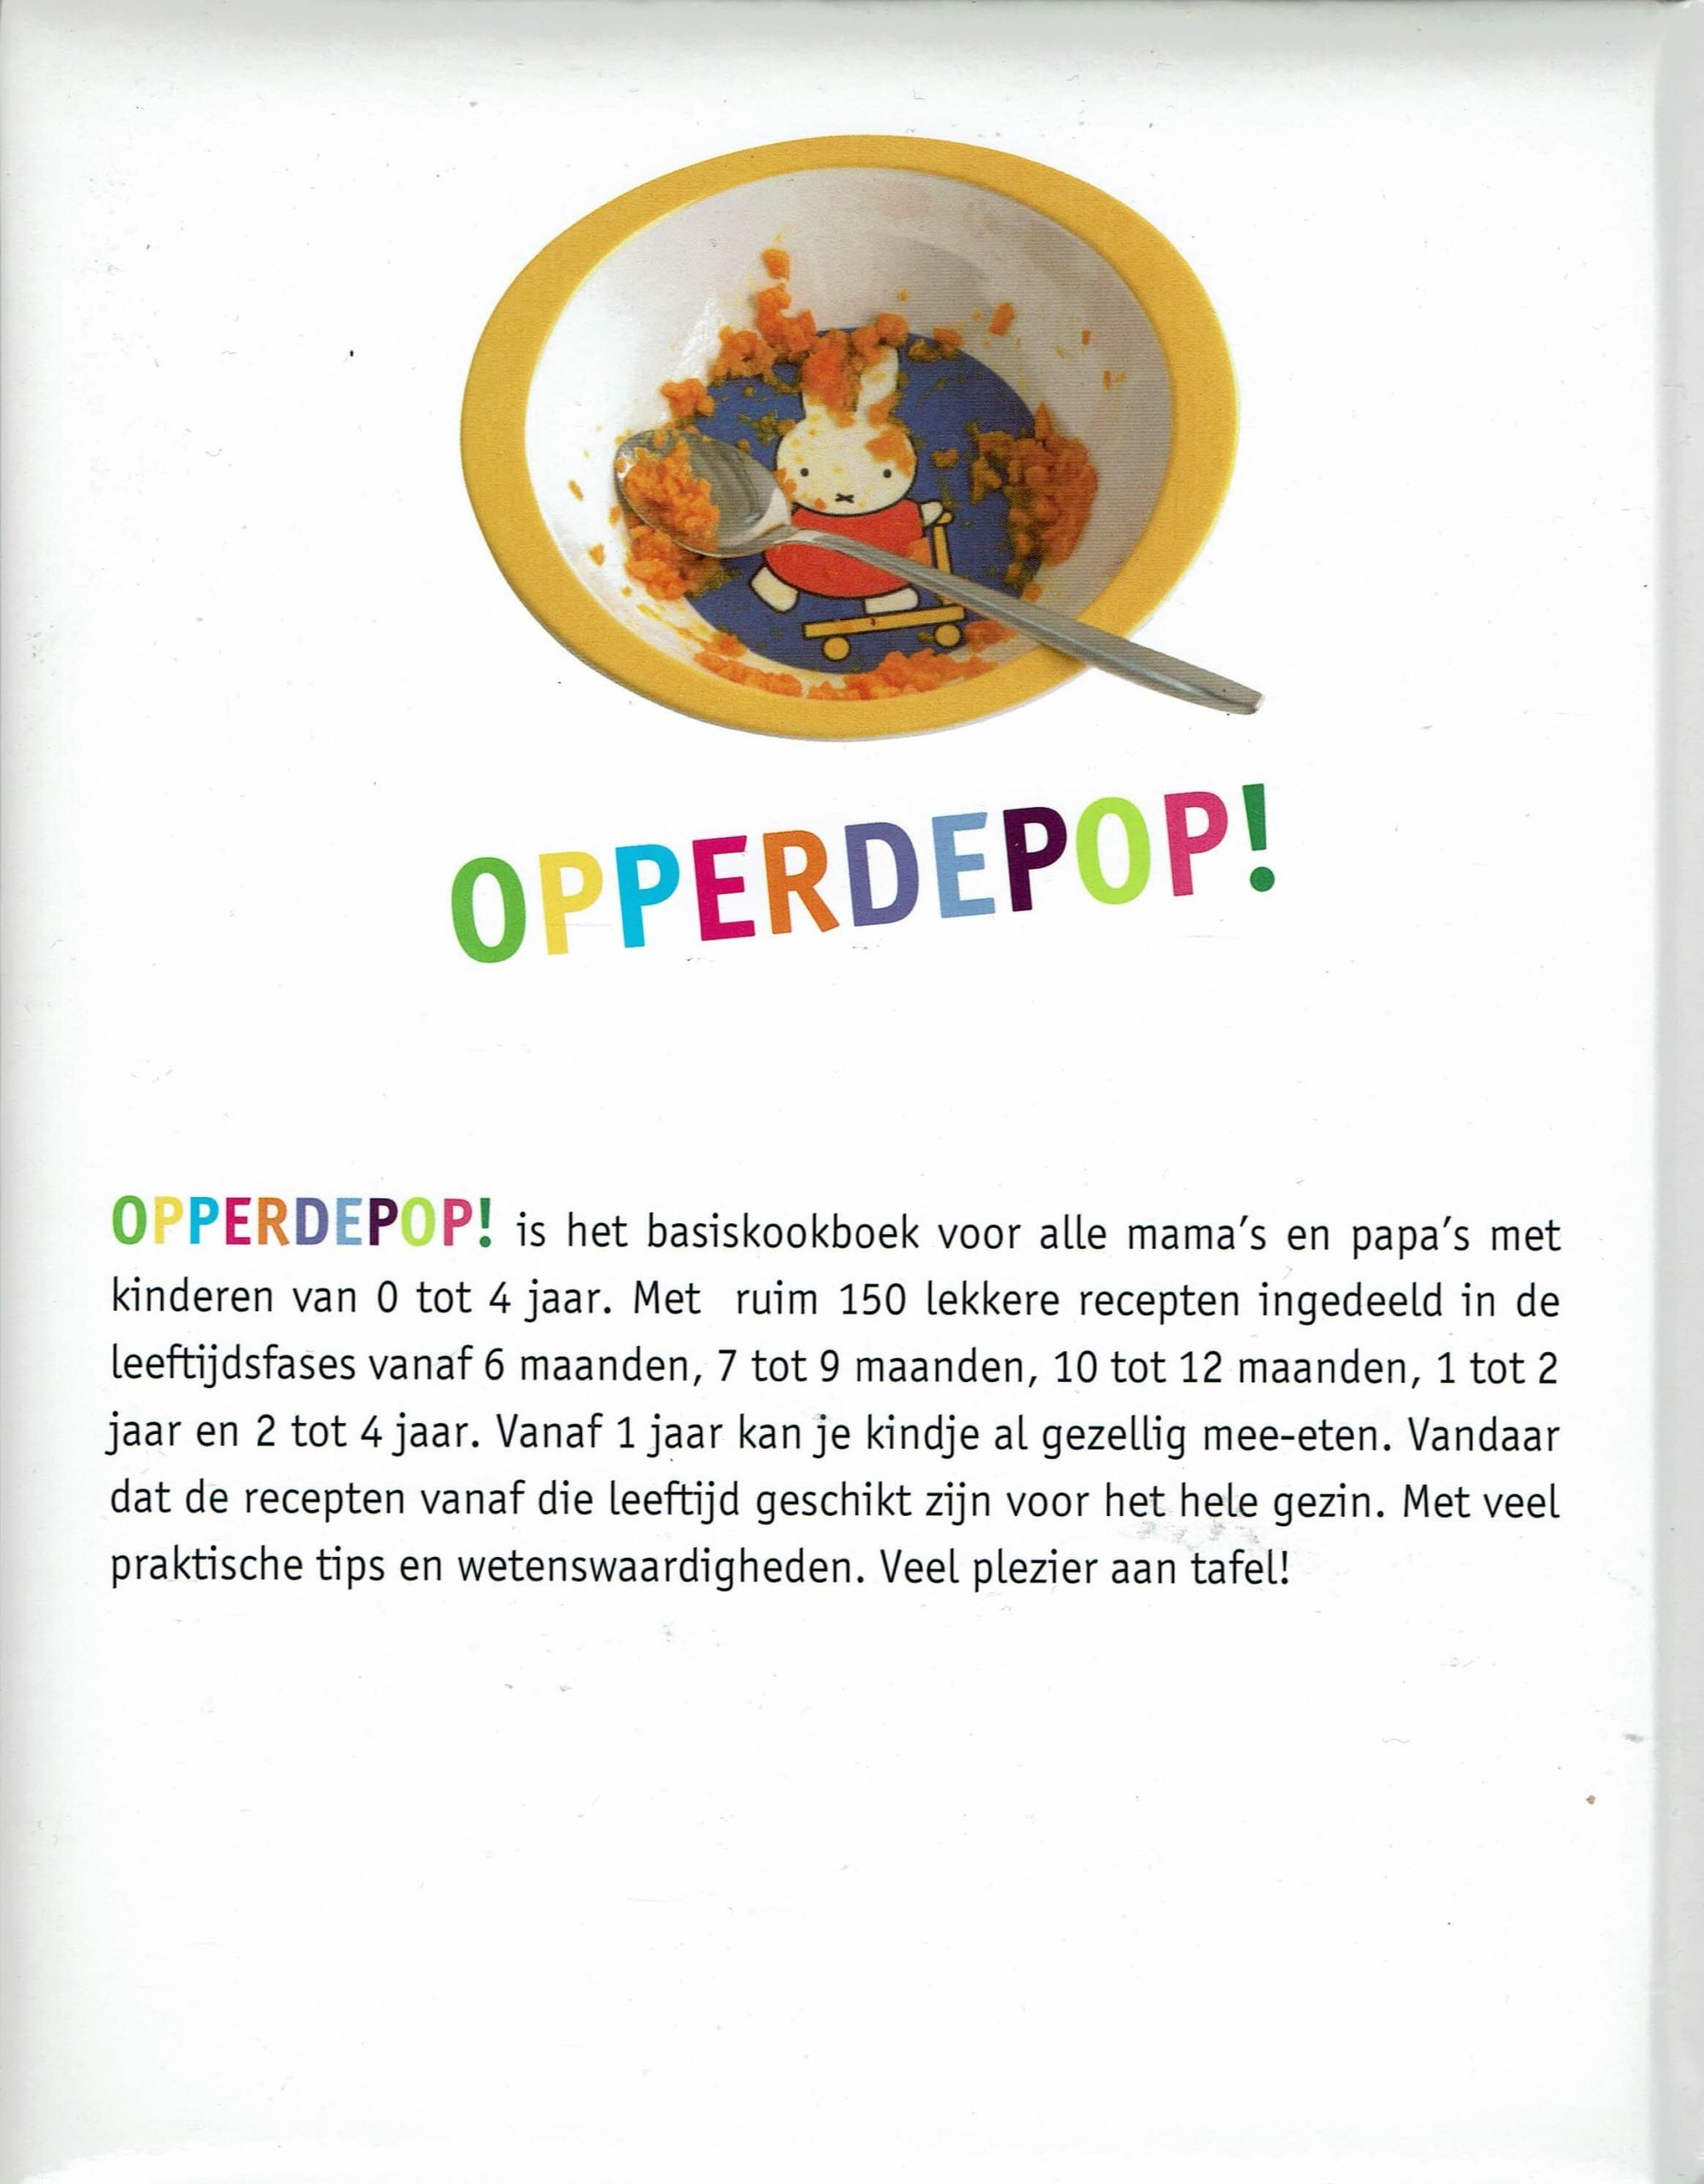 Opperdepop! basiskookboek 0 tot 4 jaar | What's New Today?